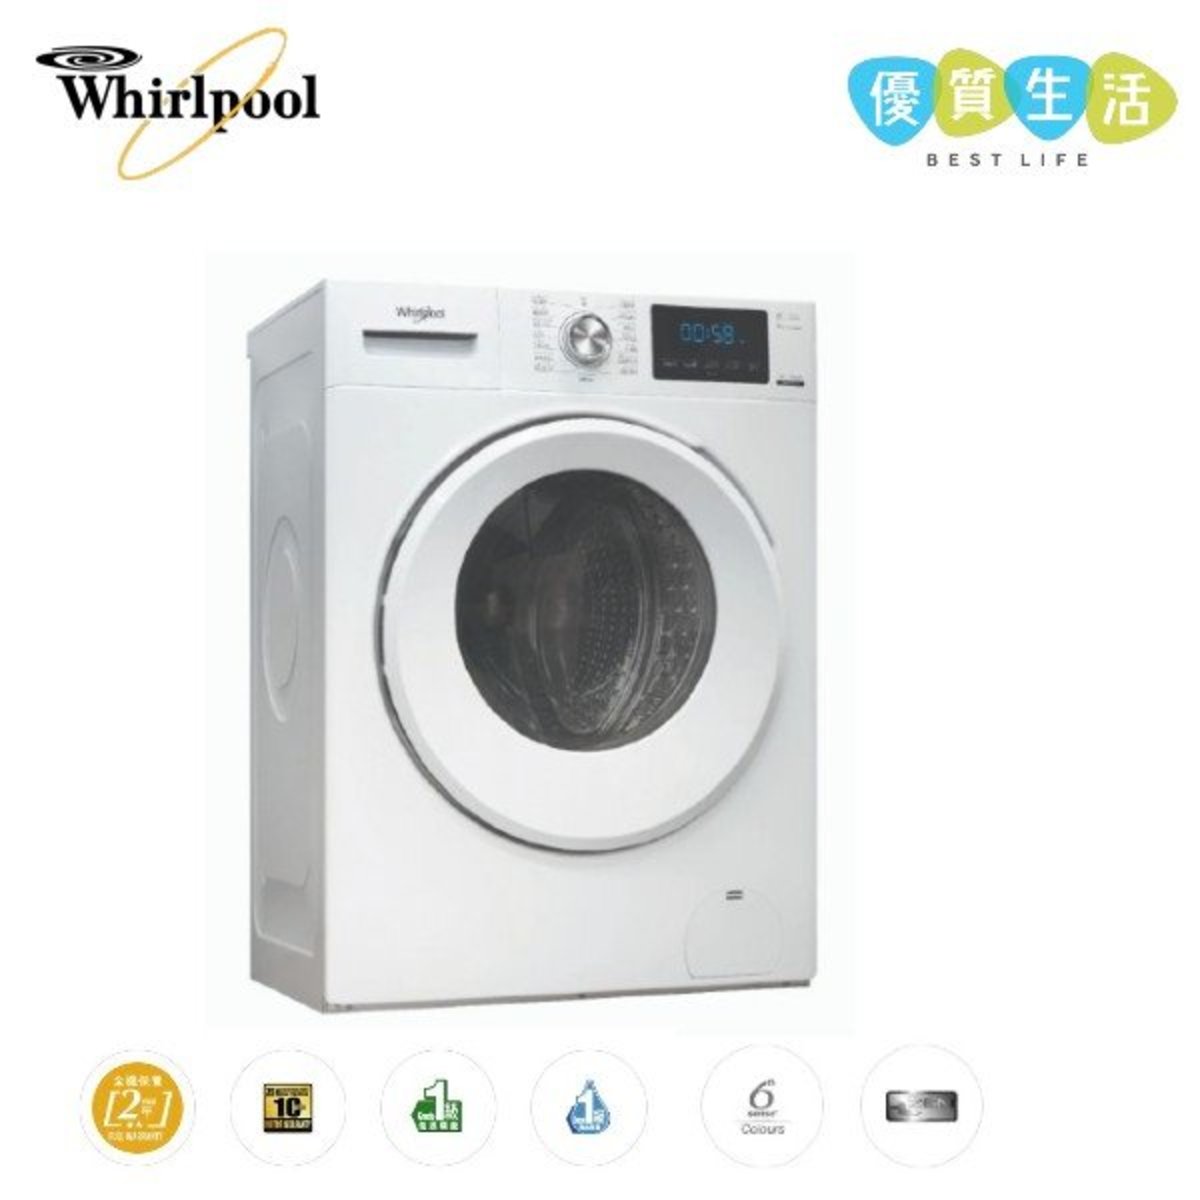 FRAL80211 820 Pure Care 高效潔淨前置滾桶式洗衣機 8公斤 / 1200轉/分鐘